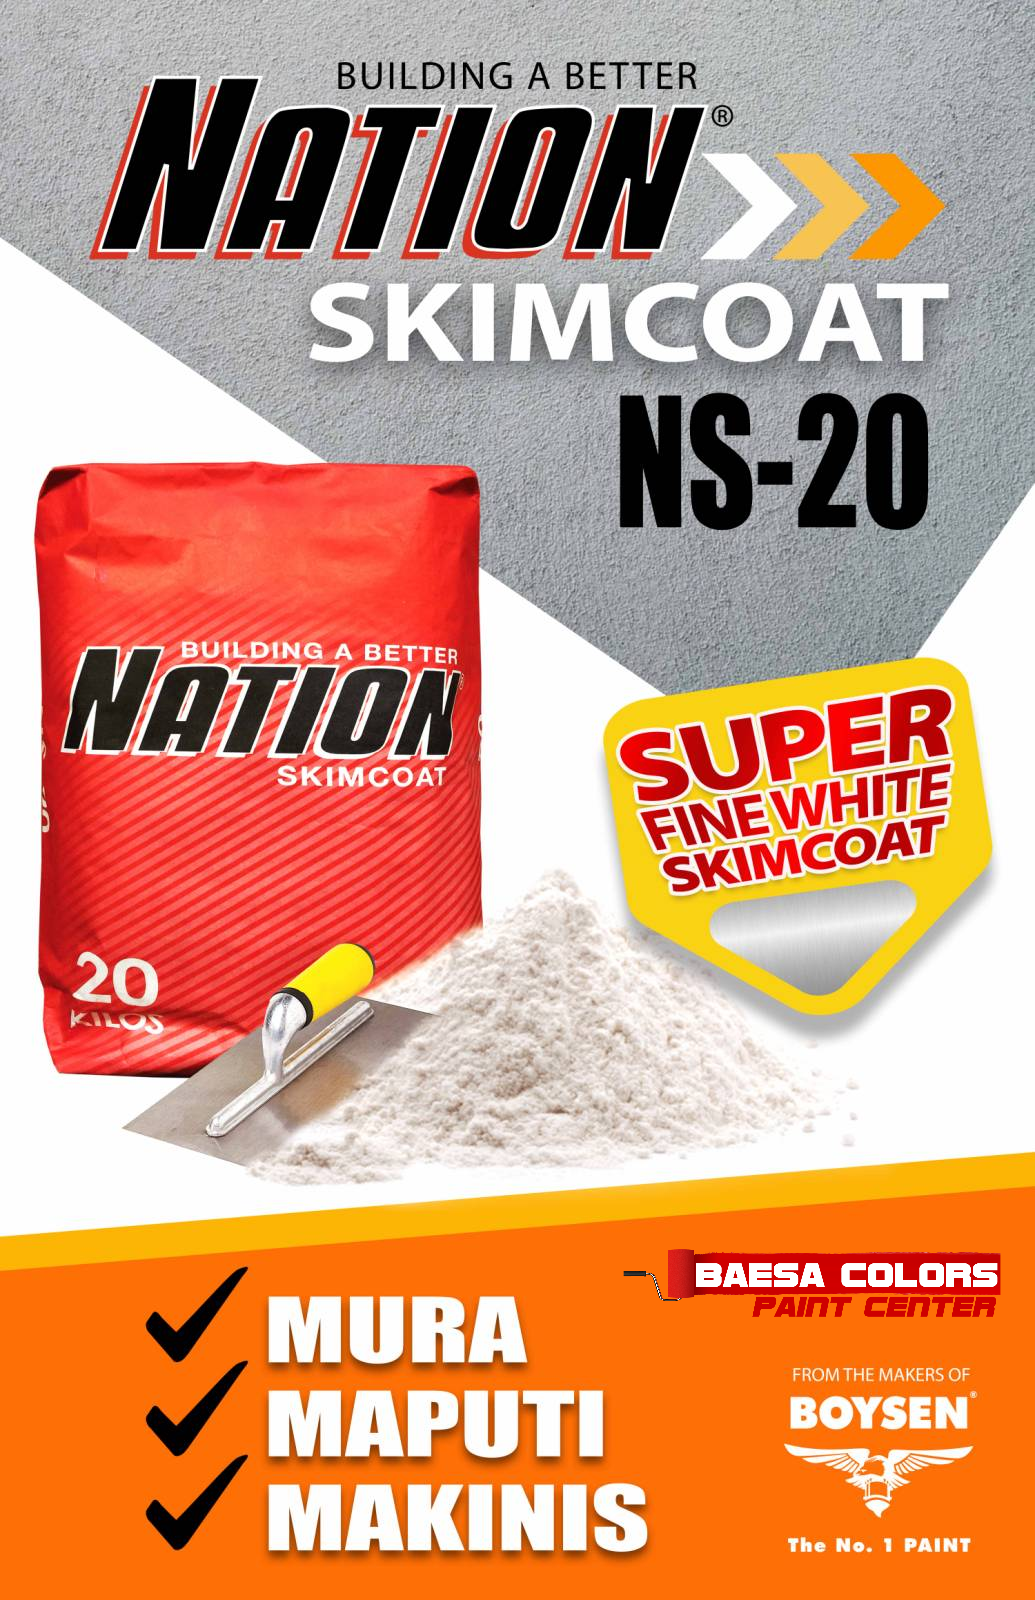 Nation™ Fine White Skimcoat NS-20